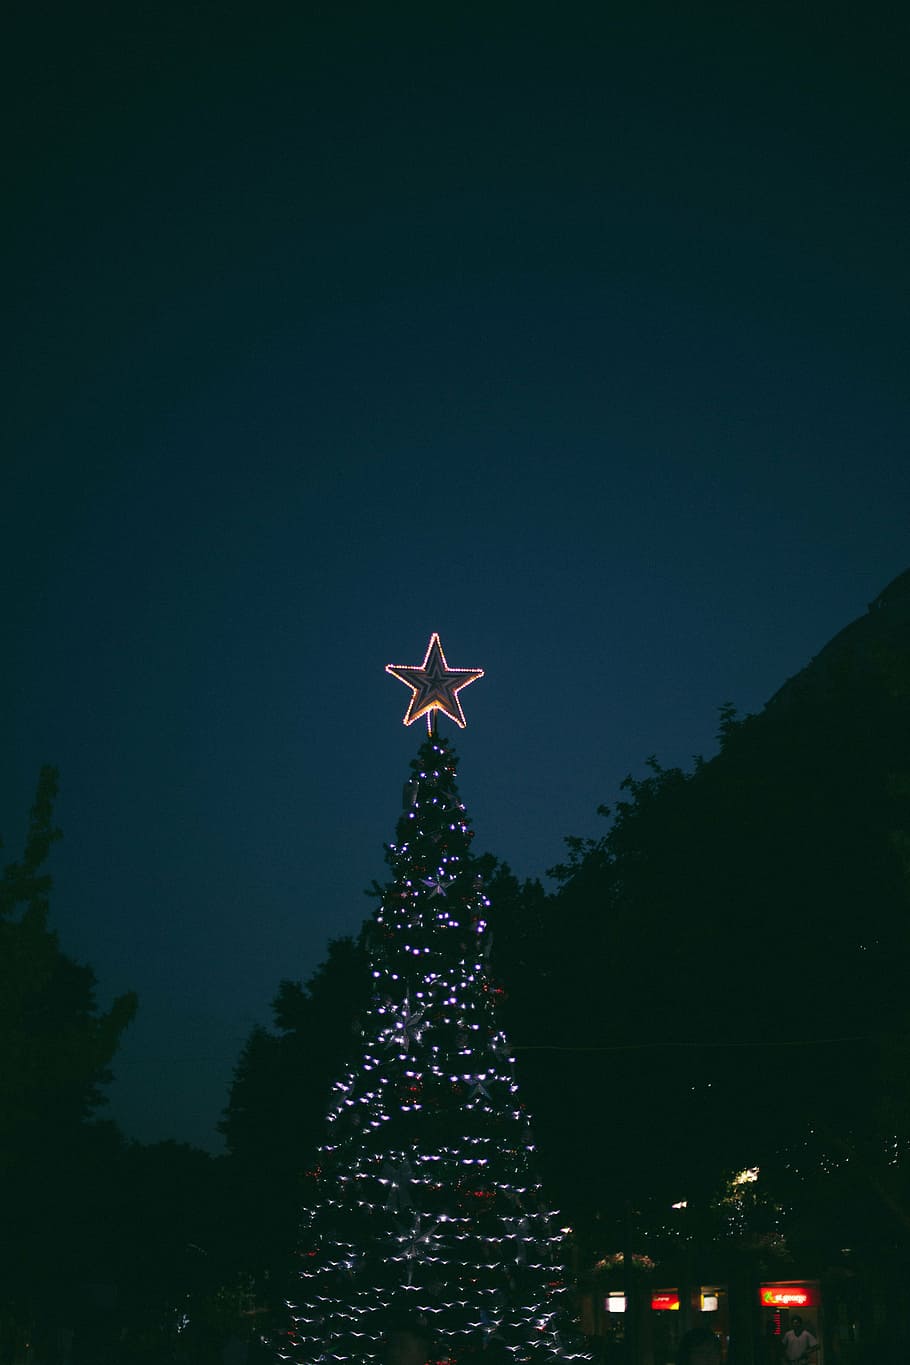 セレクティブ, フォーカス写真, クリスマスライト, 夜, クリスマス, ライト, 外, 木, 植物, 空